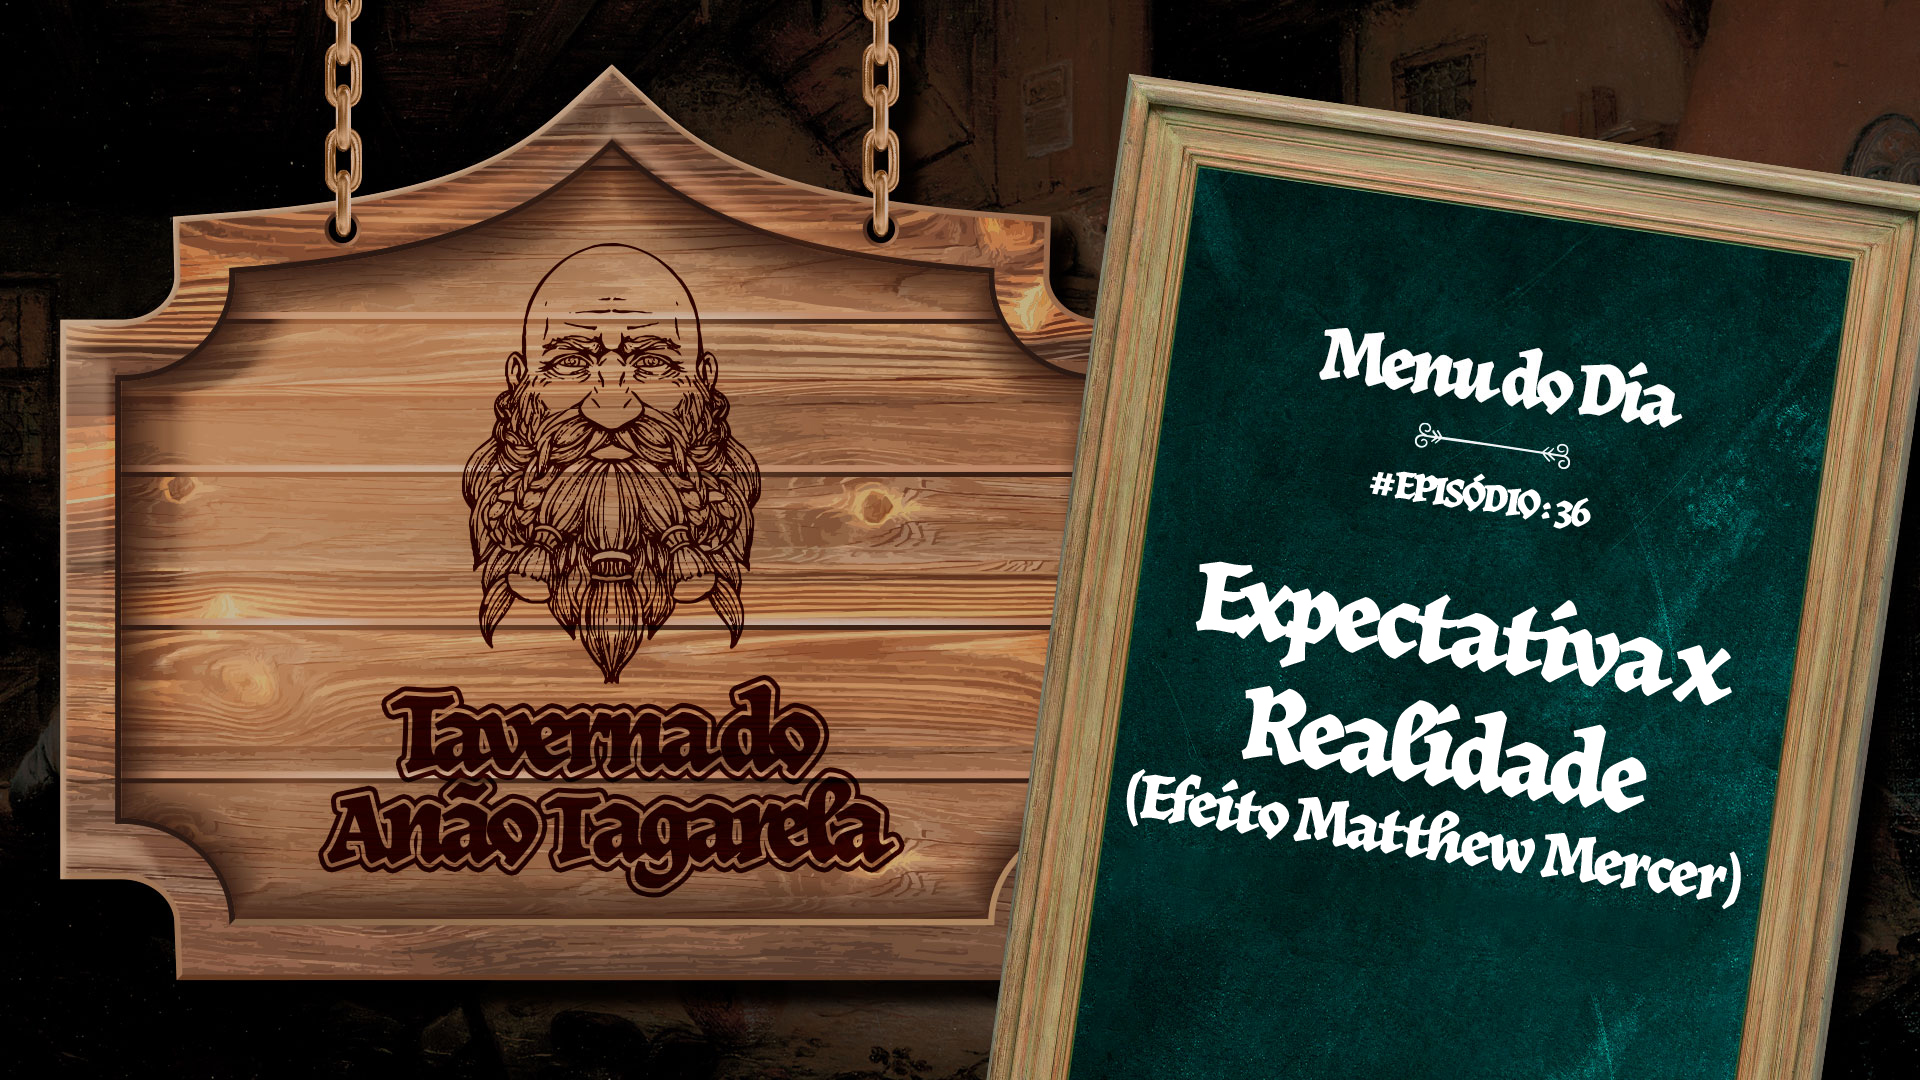 Expectativa vs Realidade (Efeito Matthew  Mercer) – Taverna do Anão Tagarela #36